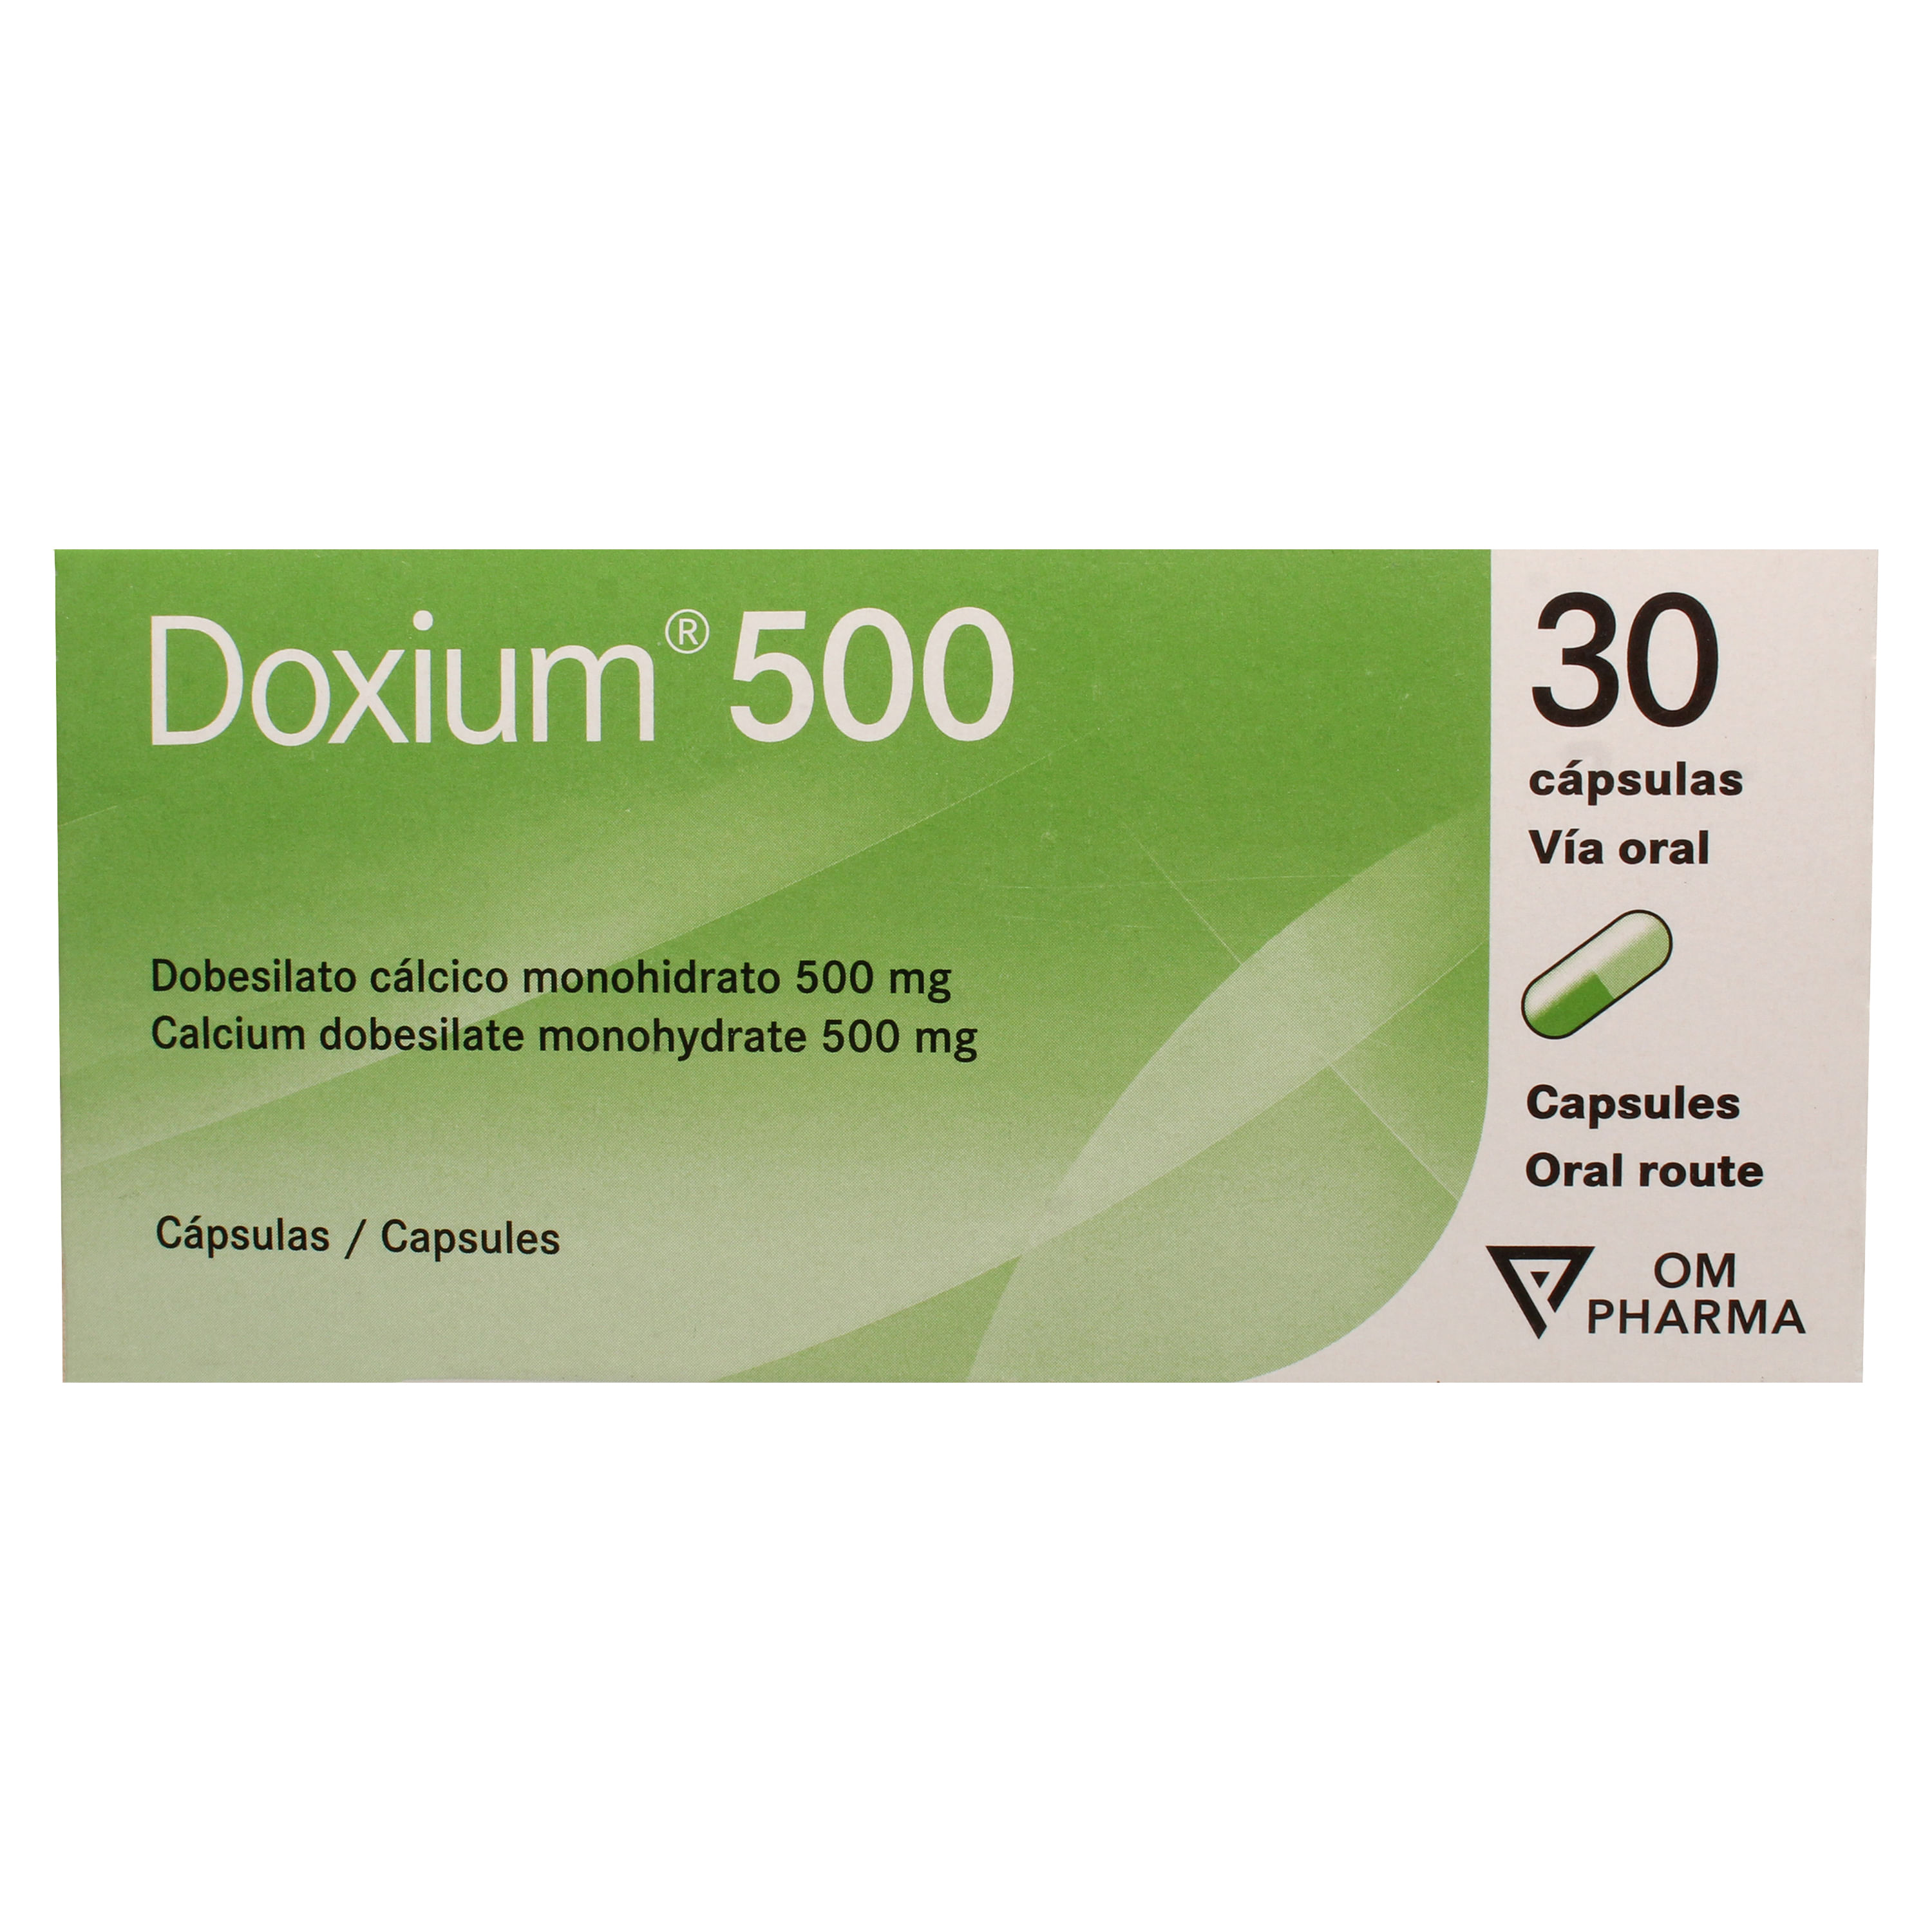 S-Doxium-500-Mg-30-Capsulas-1-30040